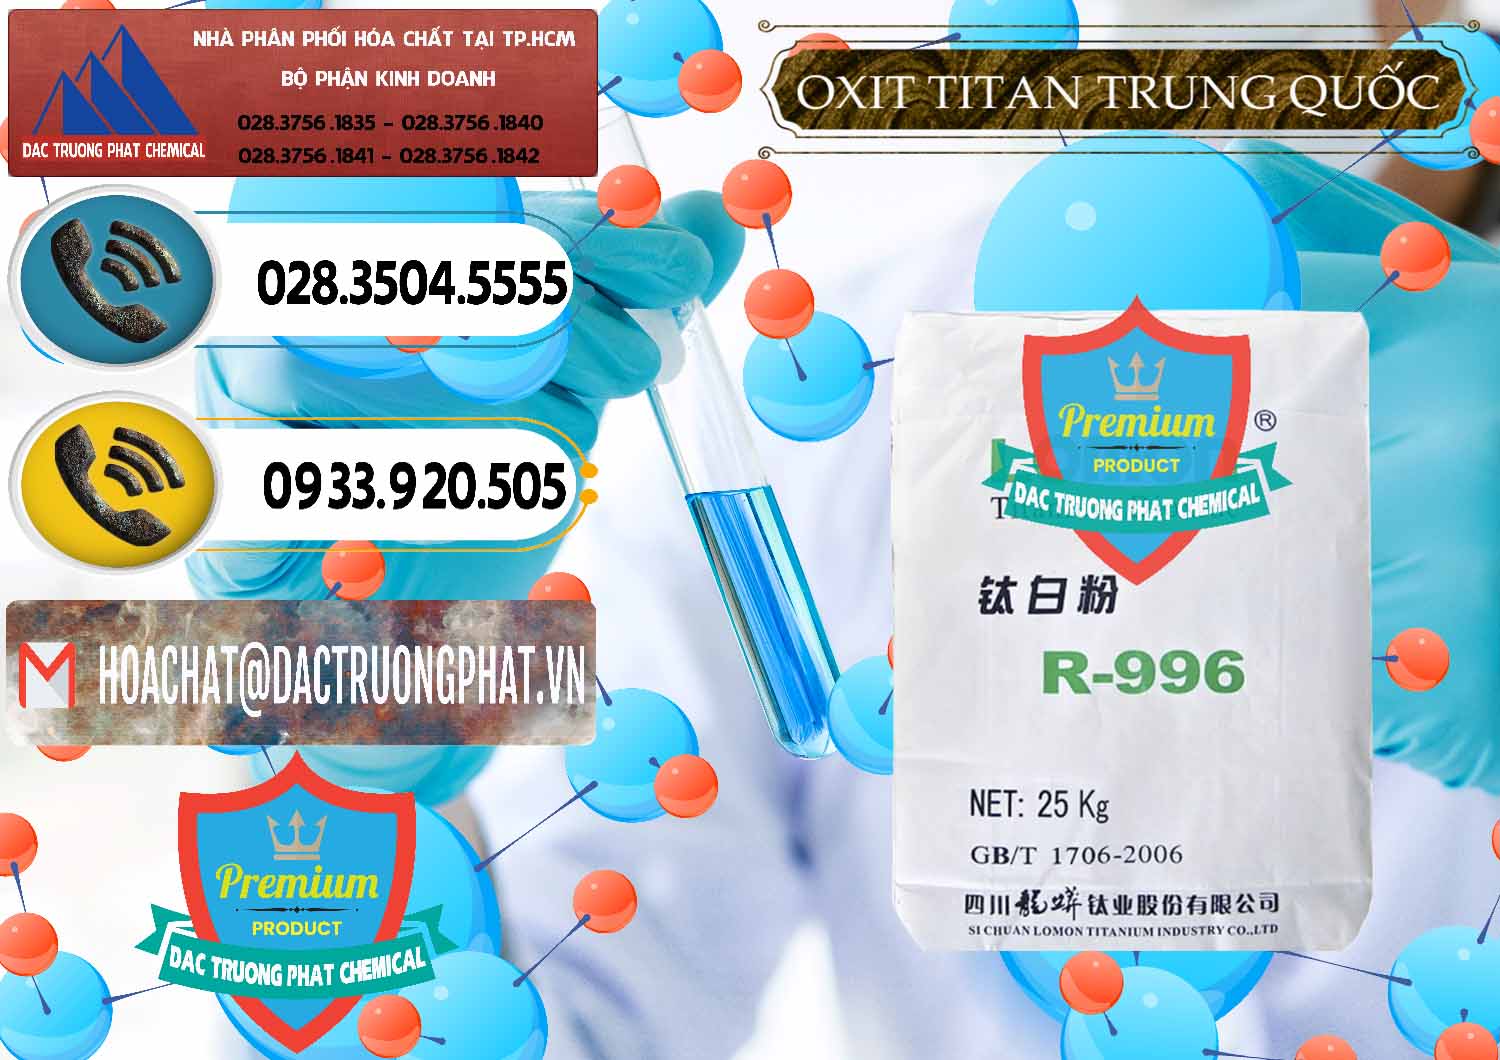 Cty nhập khẩu - bán Oxit Titan KA100 – Tio2 Trung Quốc China - 0398 - Cty chuyên bán ( phân phối ) hóa chất tại TP.HCM - hoachatdetnhuom.vn